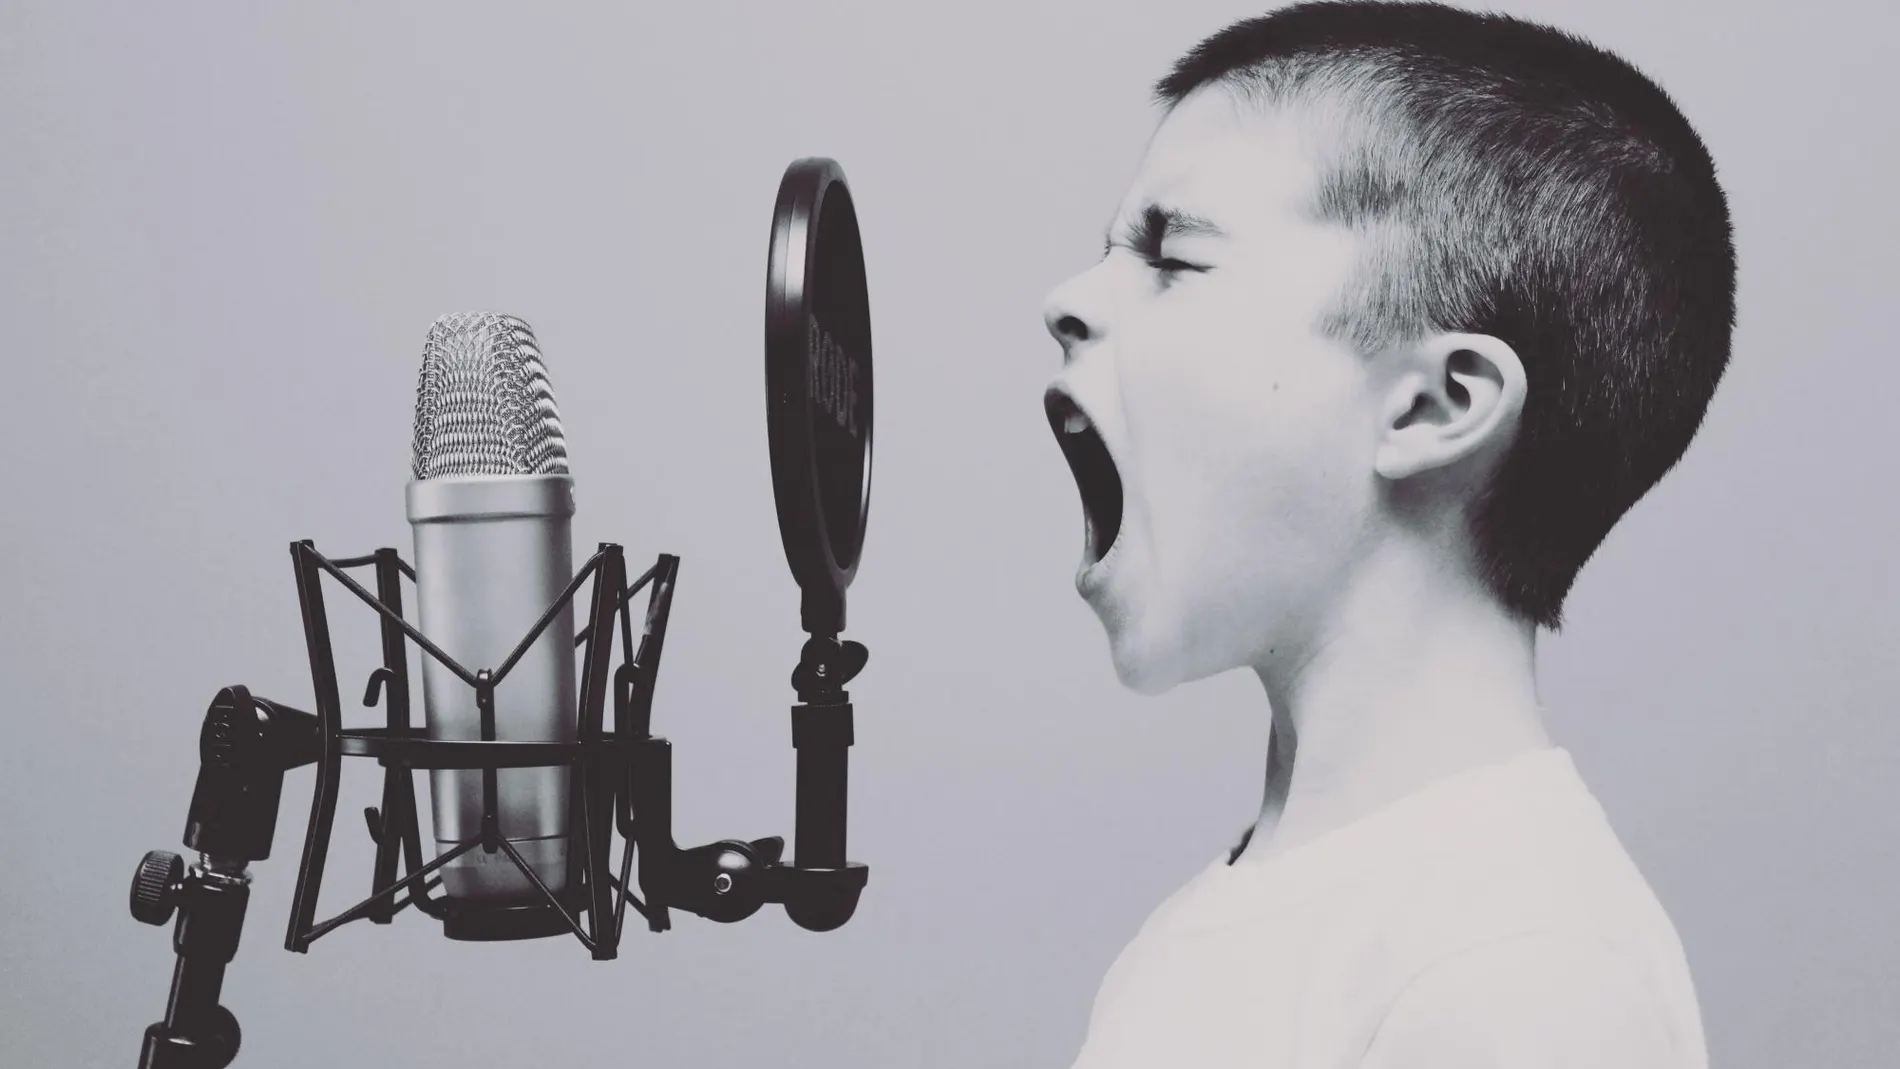 Diez ‘tips’ para cuidar de nuestra voz